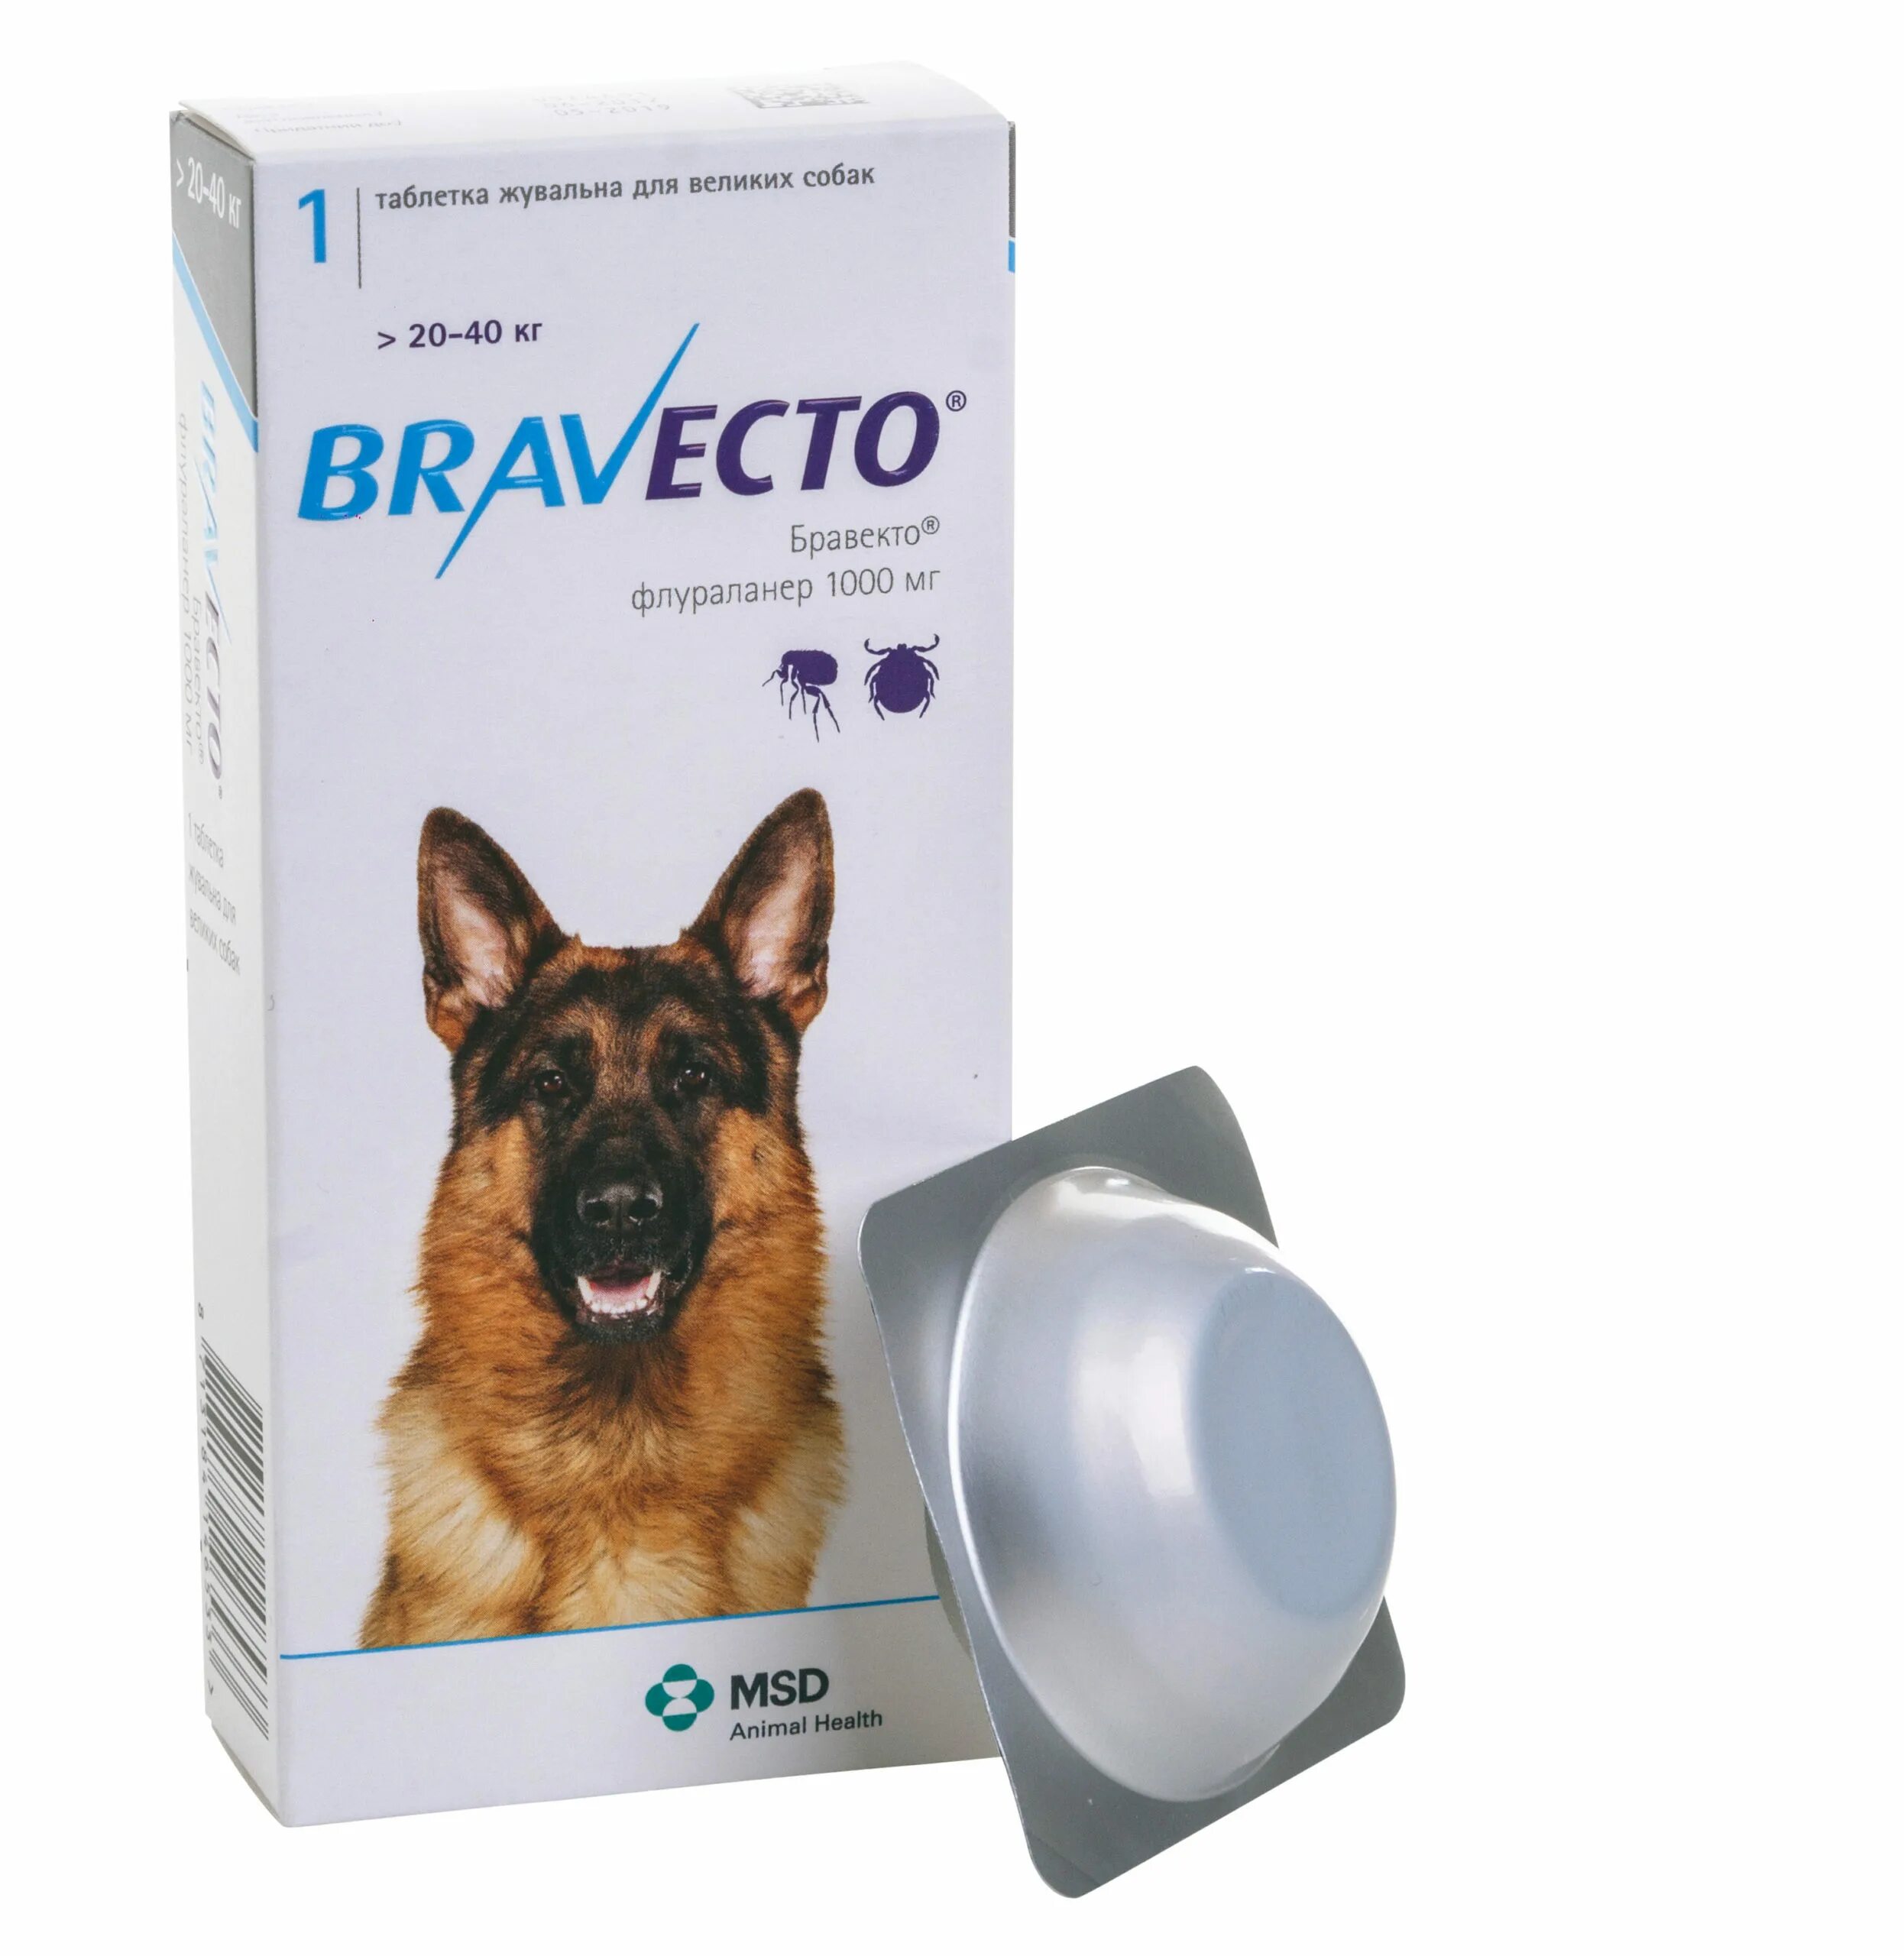 Бравекто для собак от чего. Таблетки от блох и клещей для собак Бравекто. Бравекто для собак 20-40 кг таблетки. Бравекто (Bravecto) 20-40 кг, таблетка 1000 мг. Бравекто 112.5 мг Флураланер.